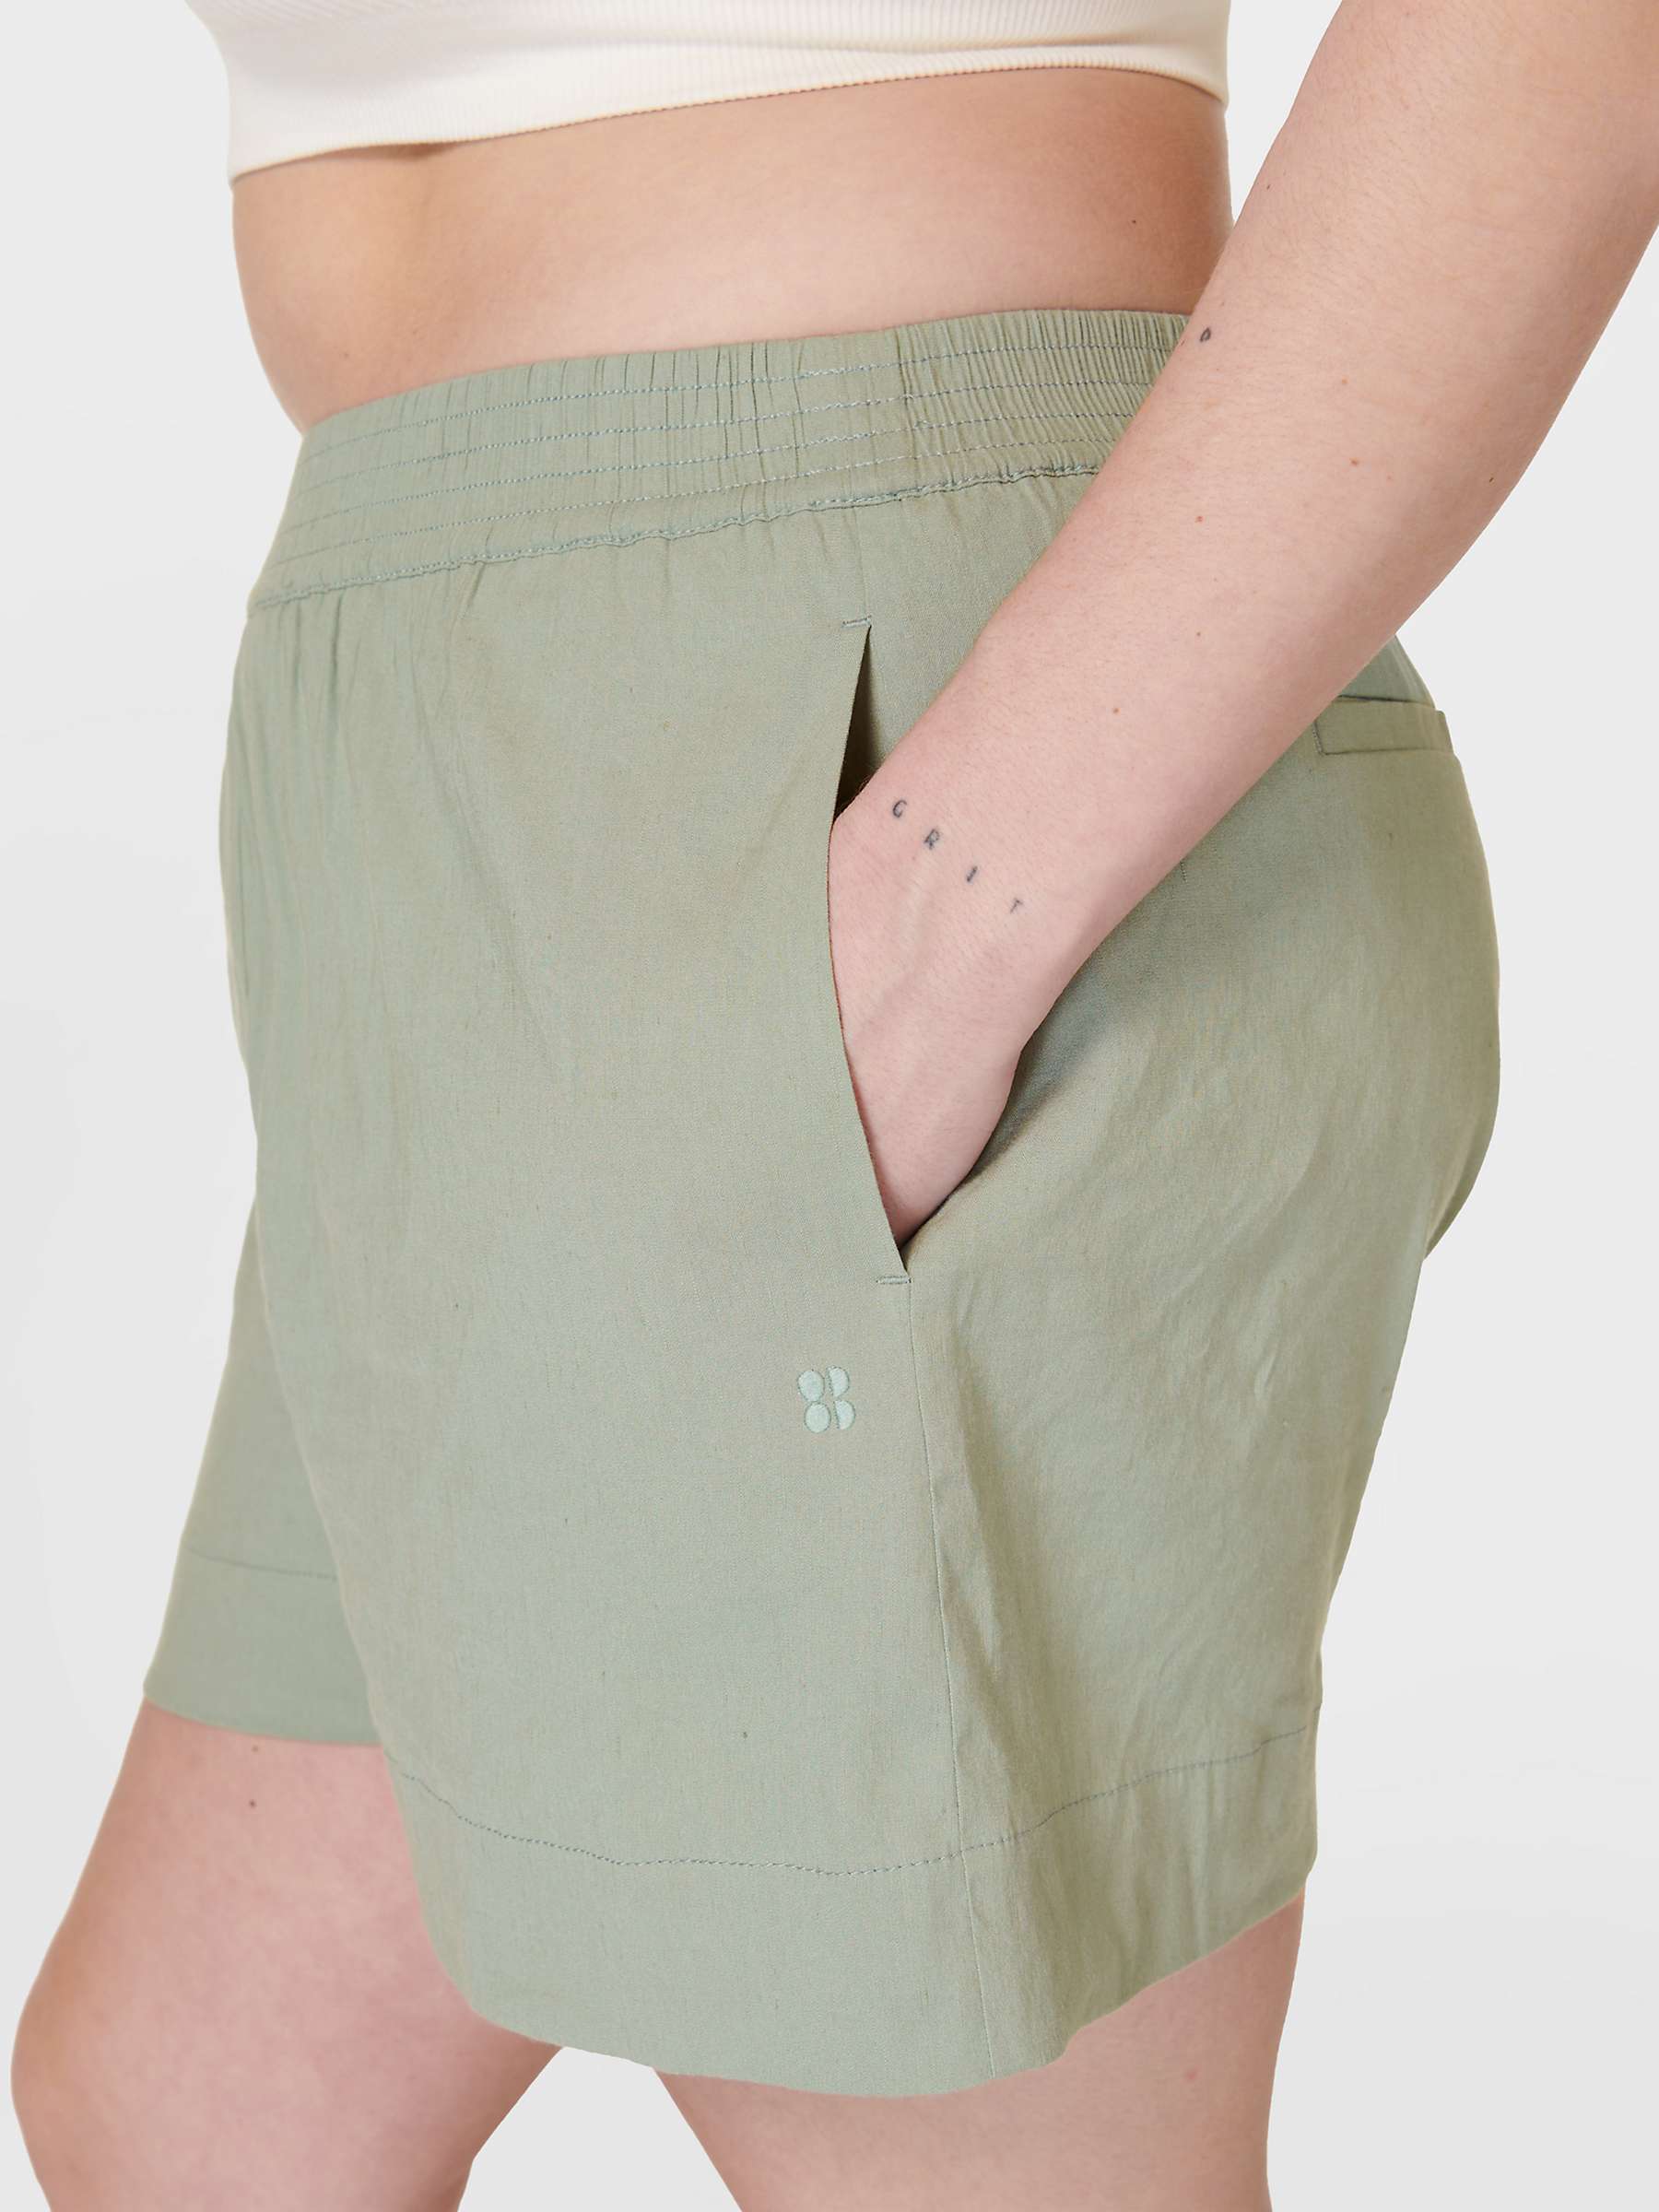 Buy Sweaty Betty Summer Stretch Linen Blend Shorts, Savannah Green Online at johnlewis.com